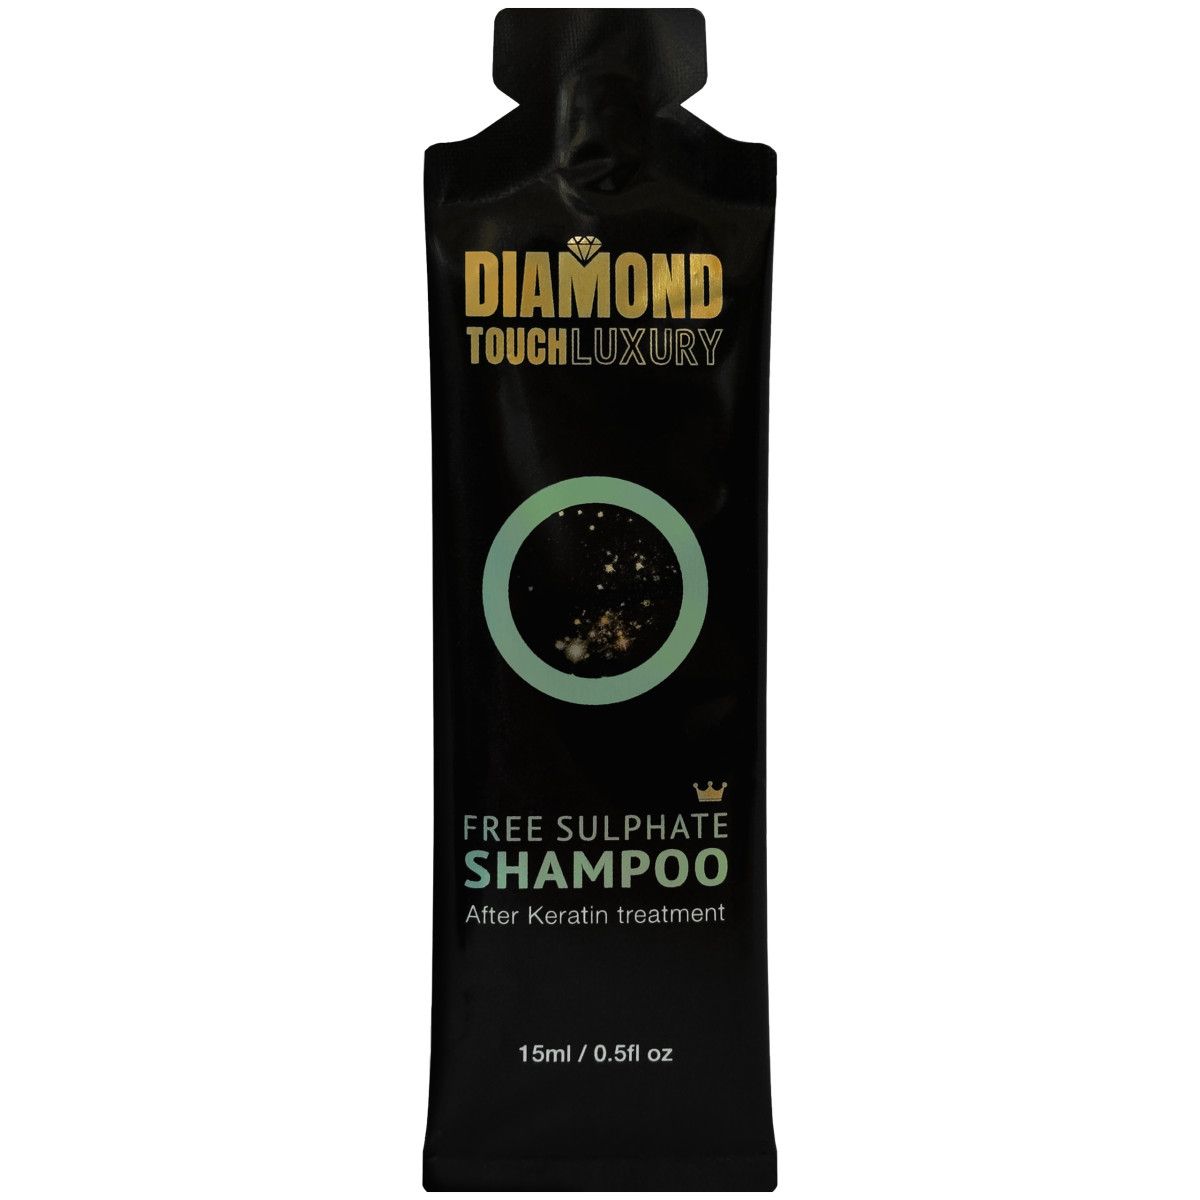 Diamond Touch Luxury Sulphate Free Shampoo - szampon z proteinami soi, 15ml